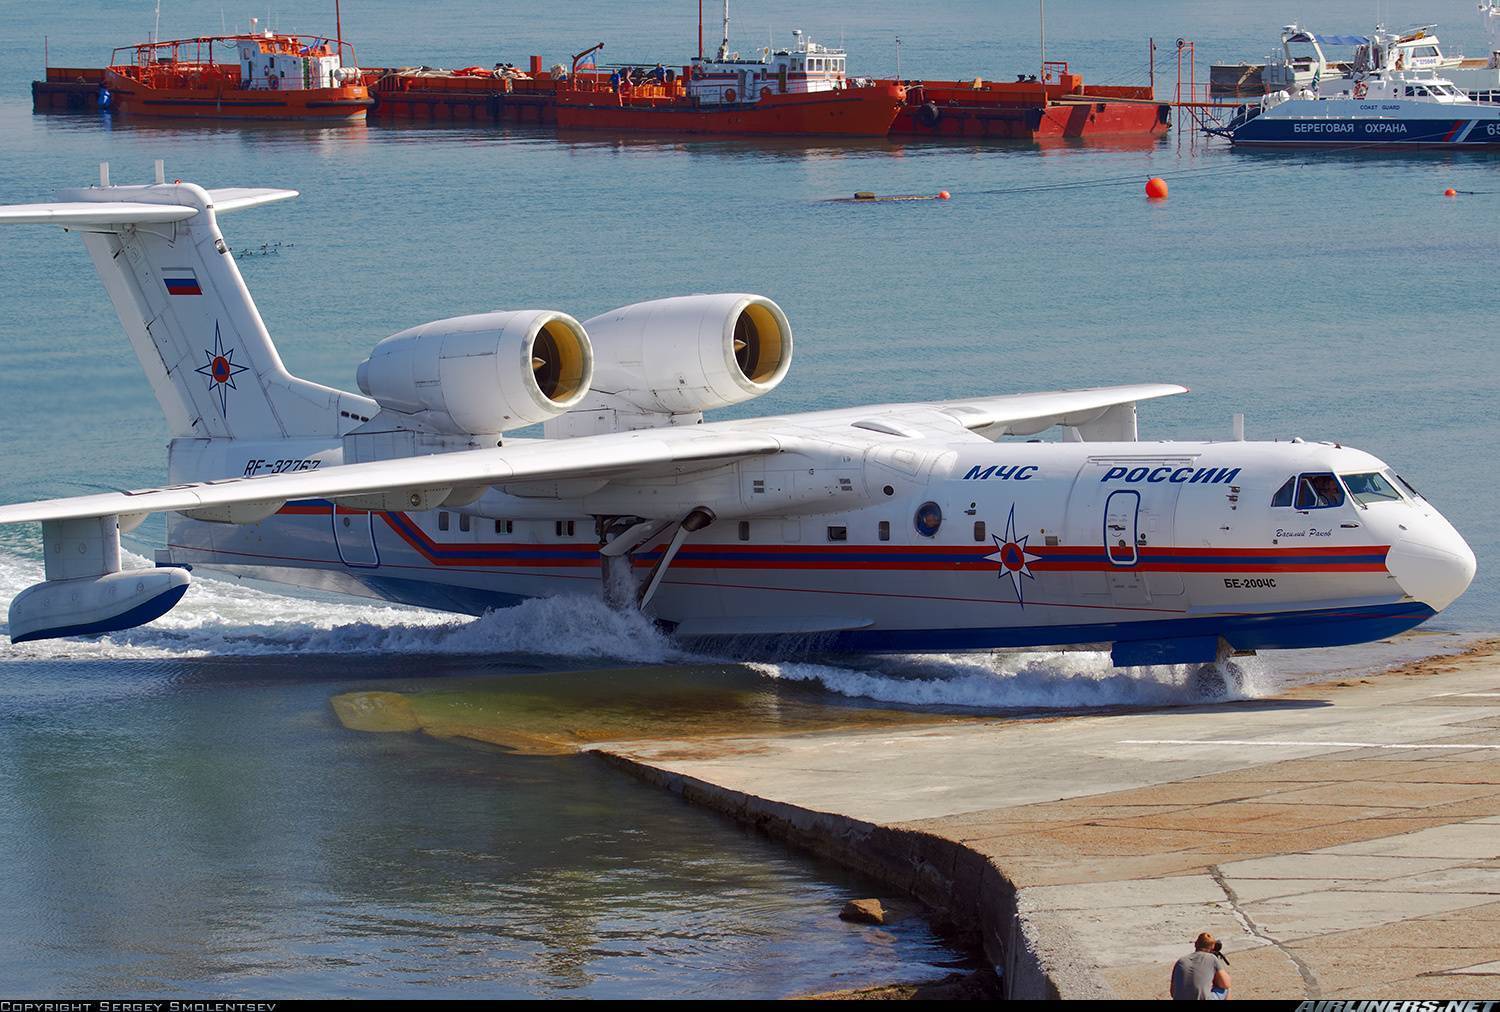 Бе-200 самолет амфибия, производство и технические характеристики ттх первого серийного российского гидросамолета, забор воды видео